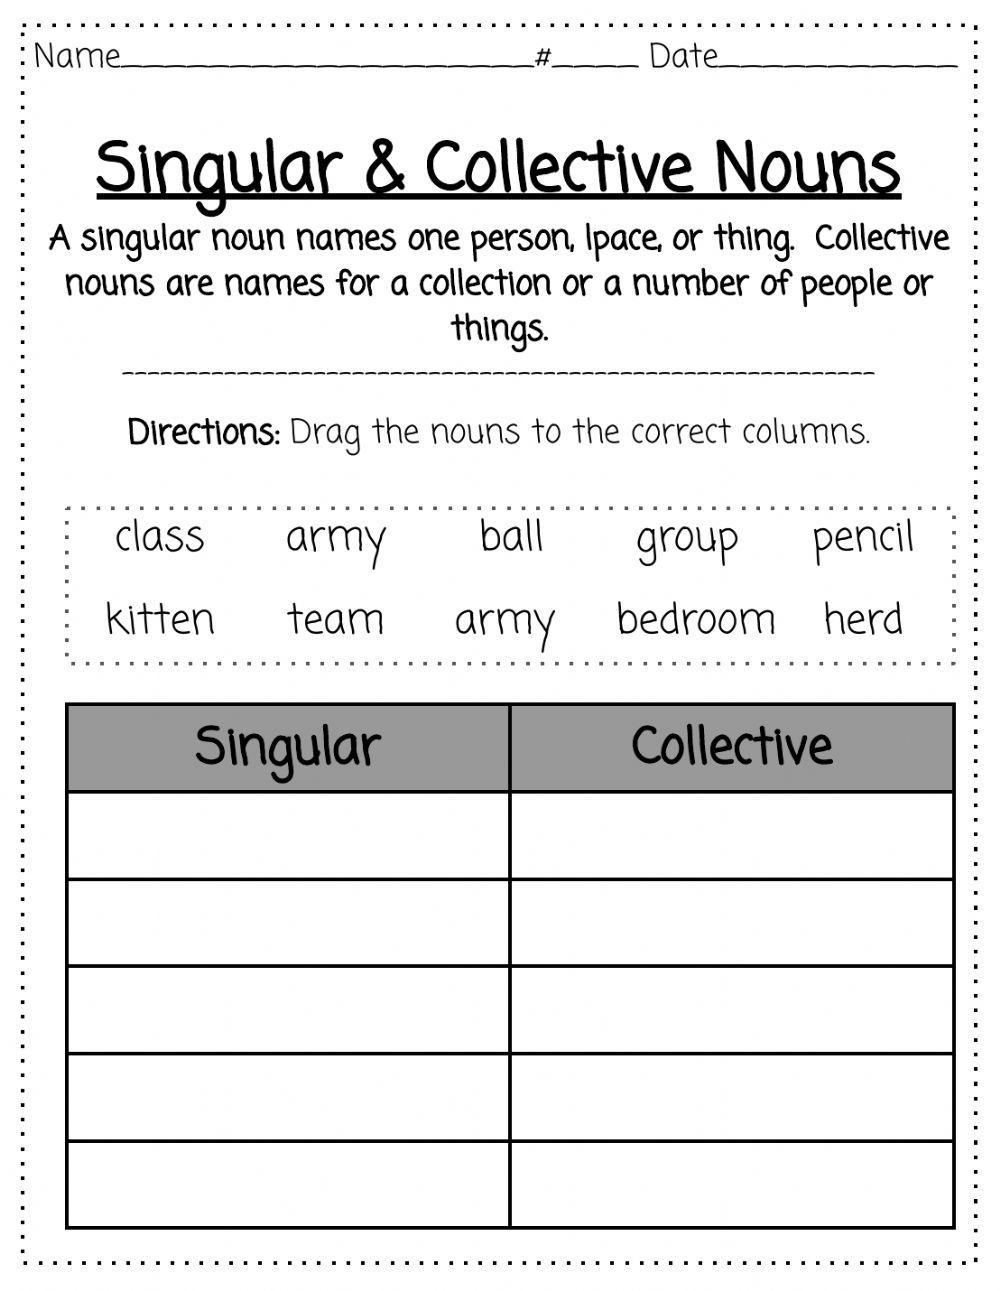 Singular & Collective Nouns